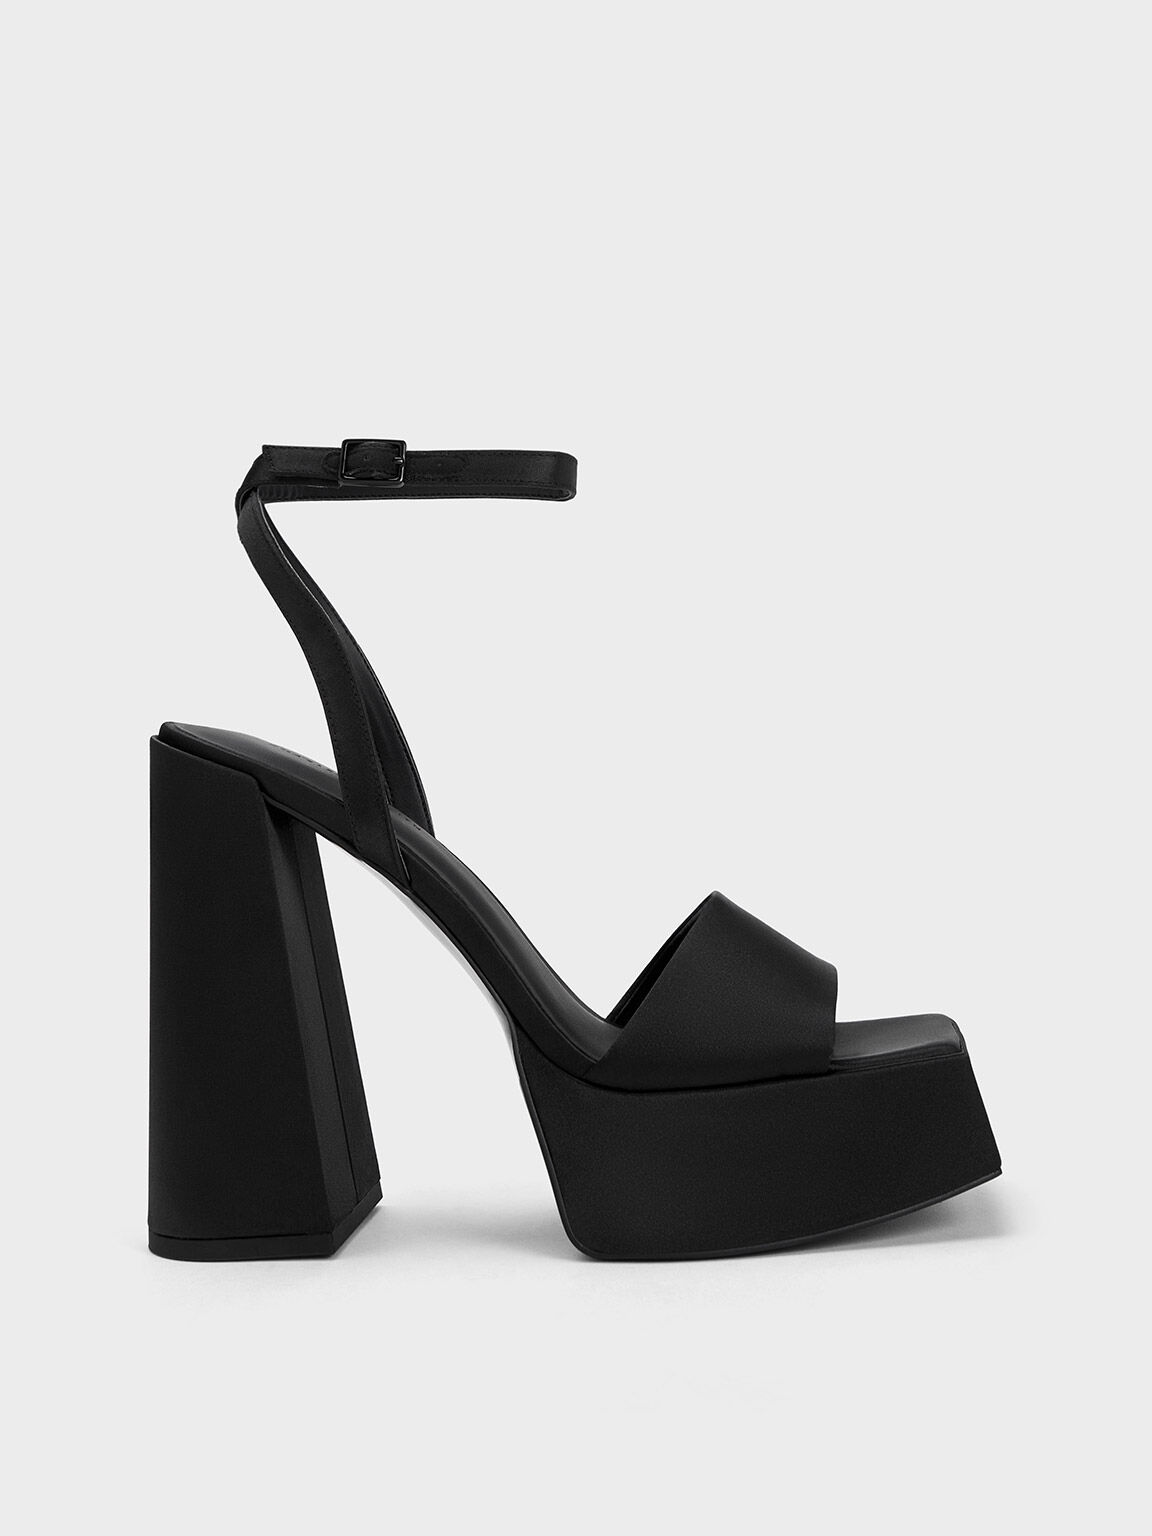 Ankle-Strap Platform Sandals, Black Satin, hi-res